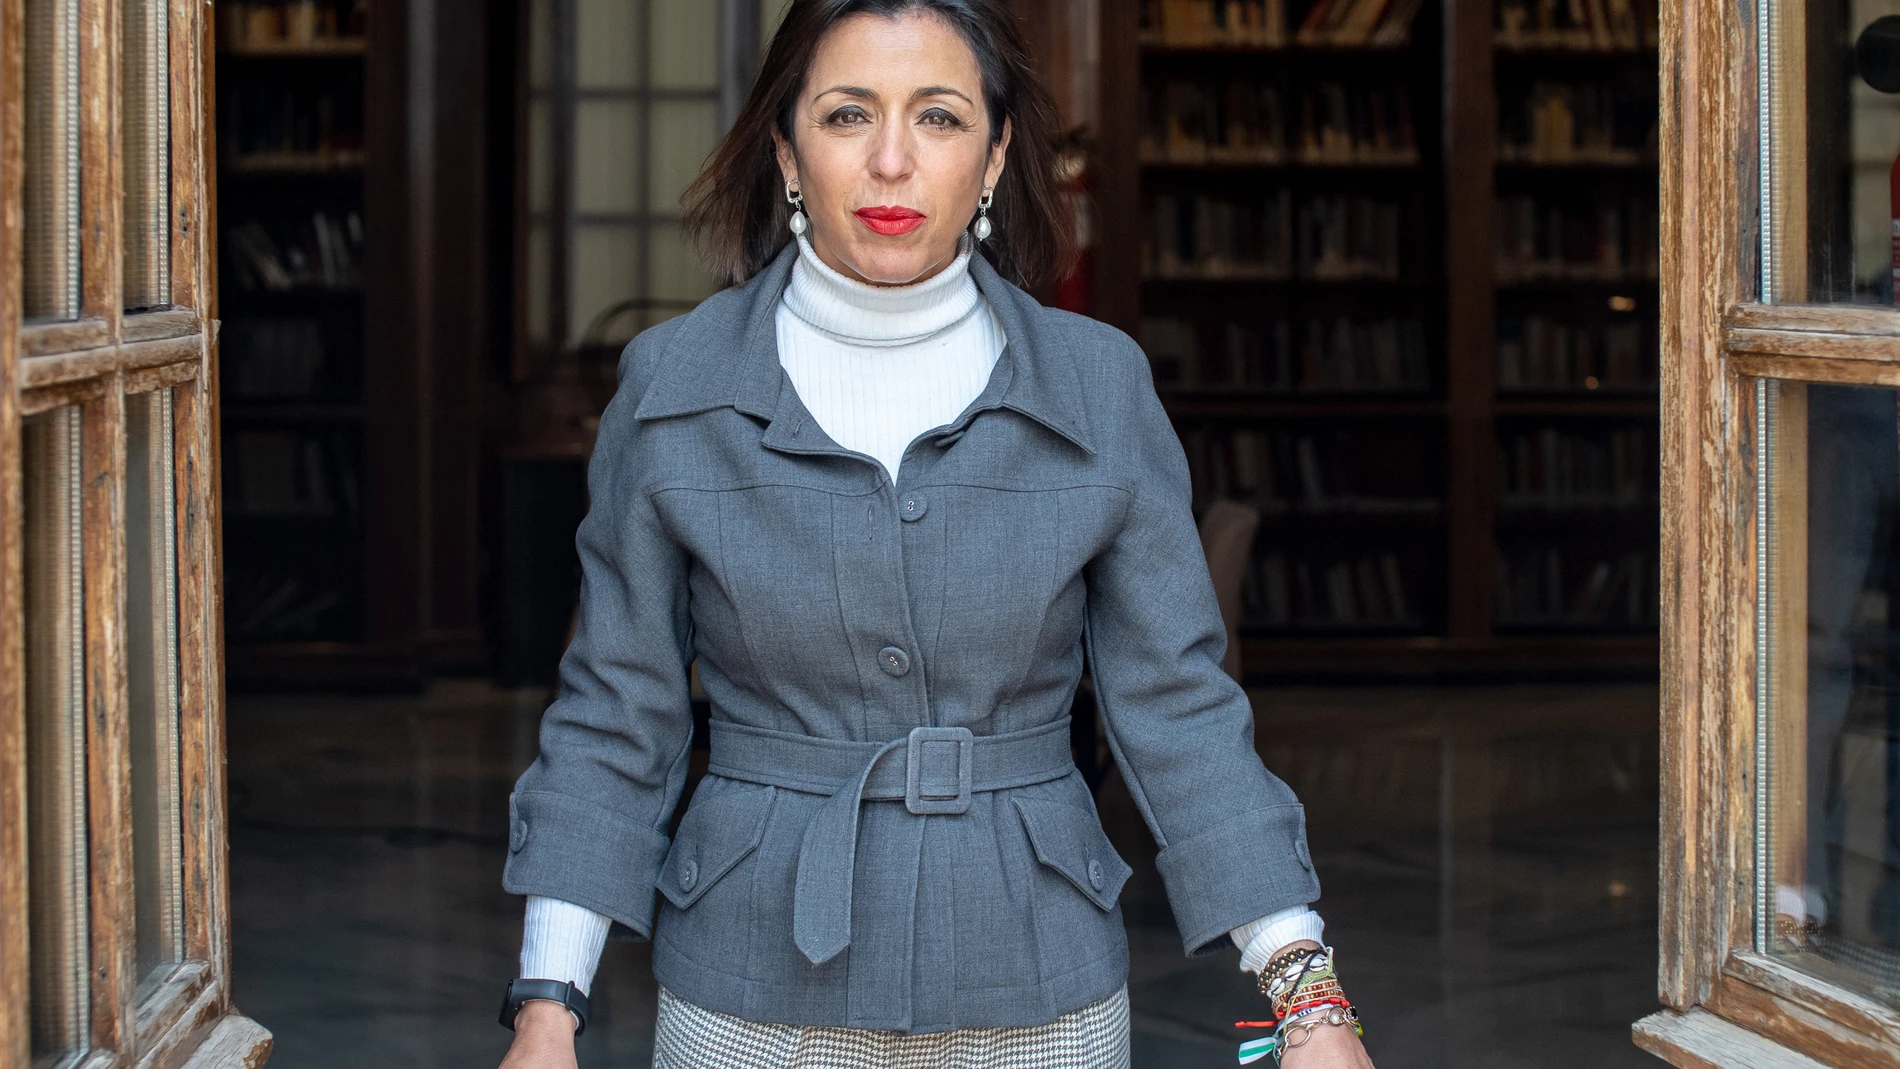 La presidenta del Parlamento de Andalucía, Marta Bosquet